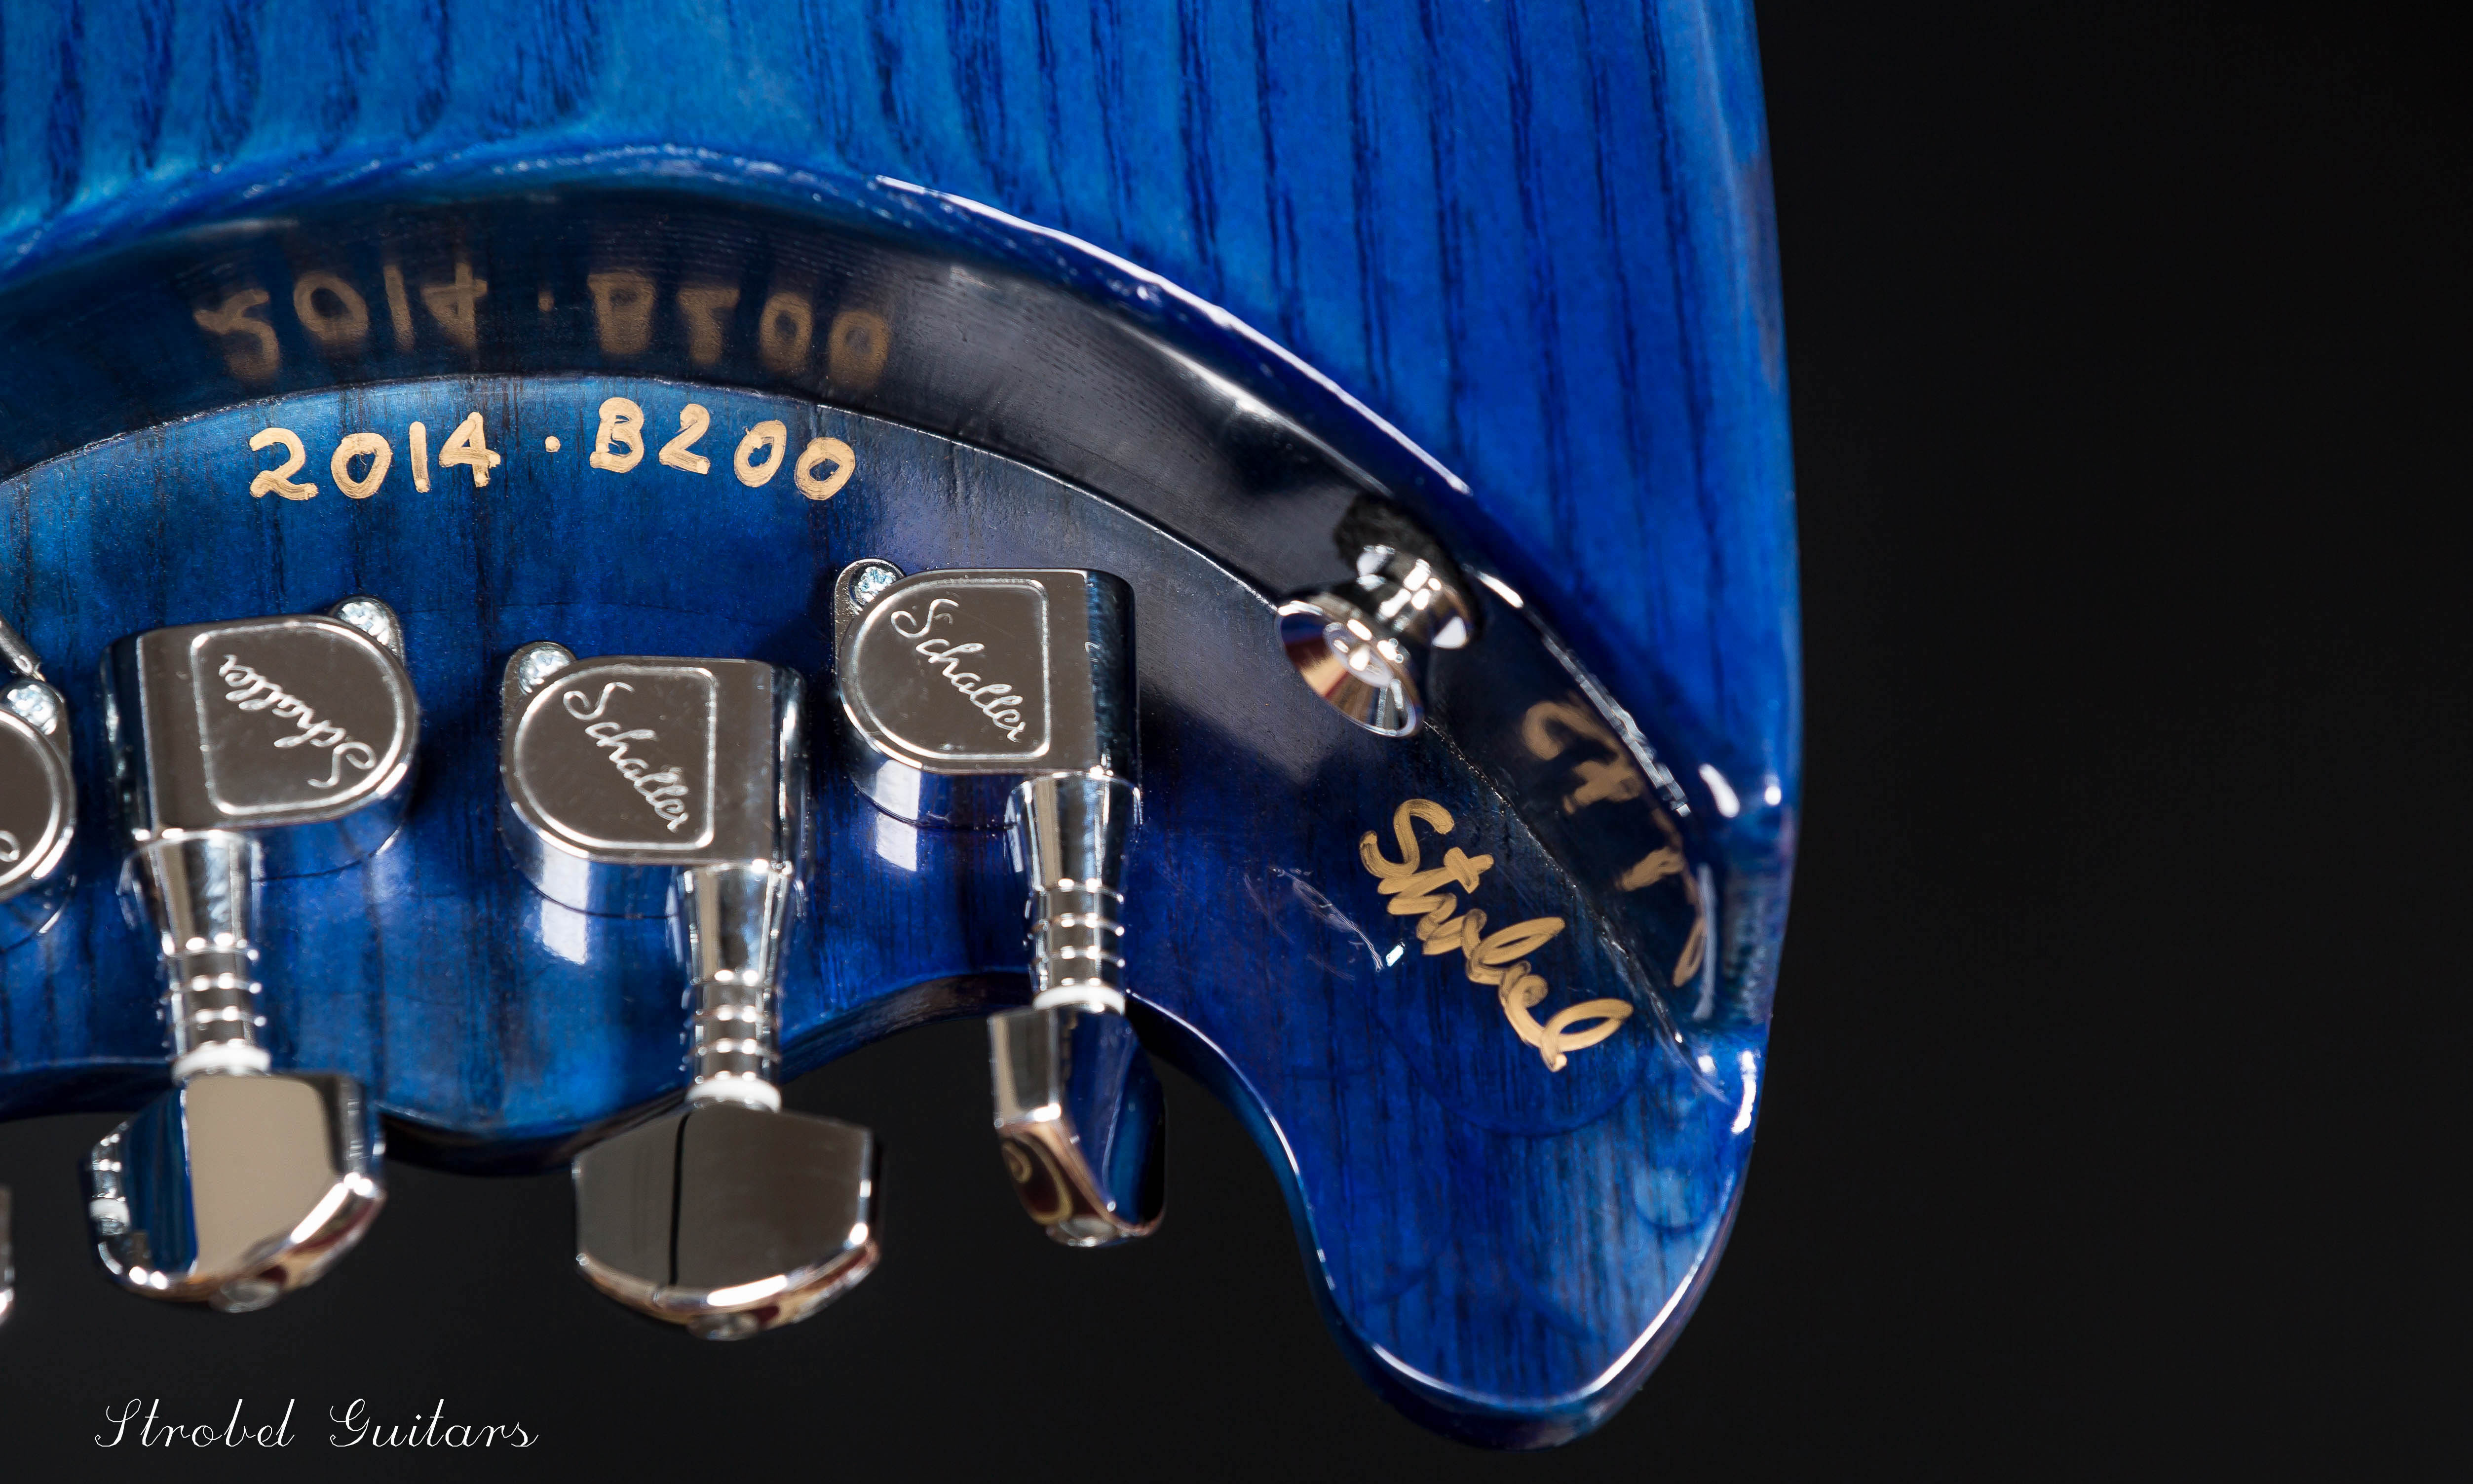 Blue Rambler Travel Bass signed